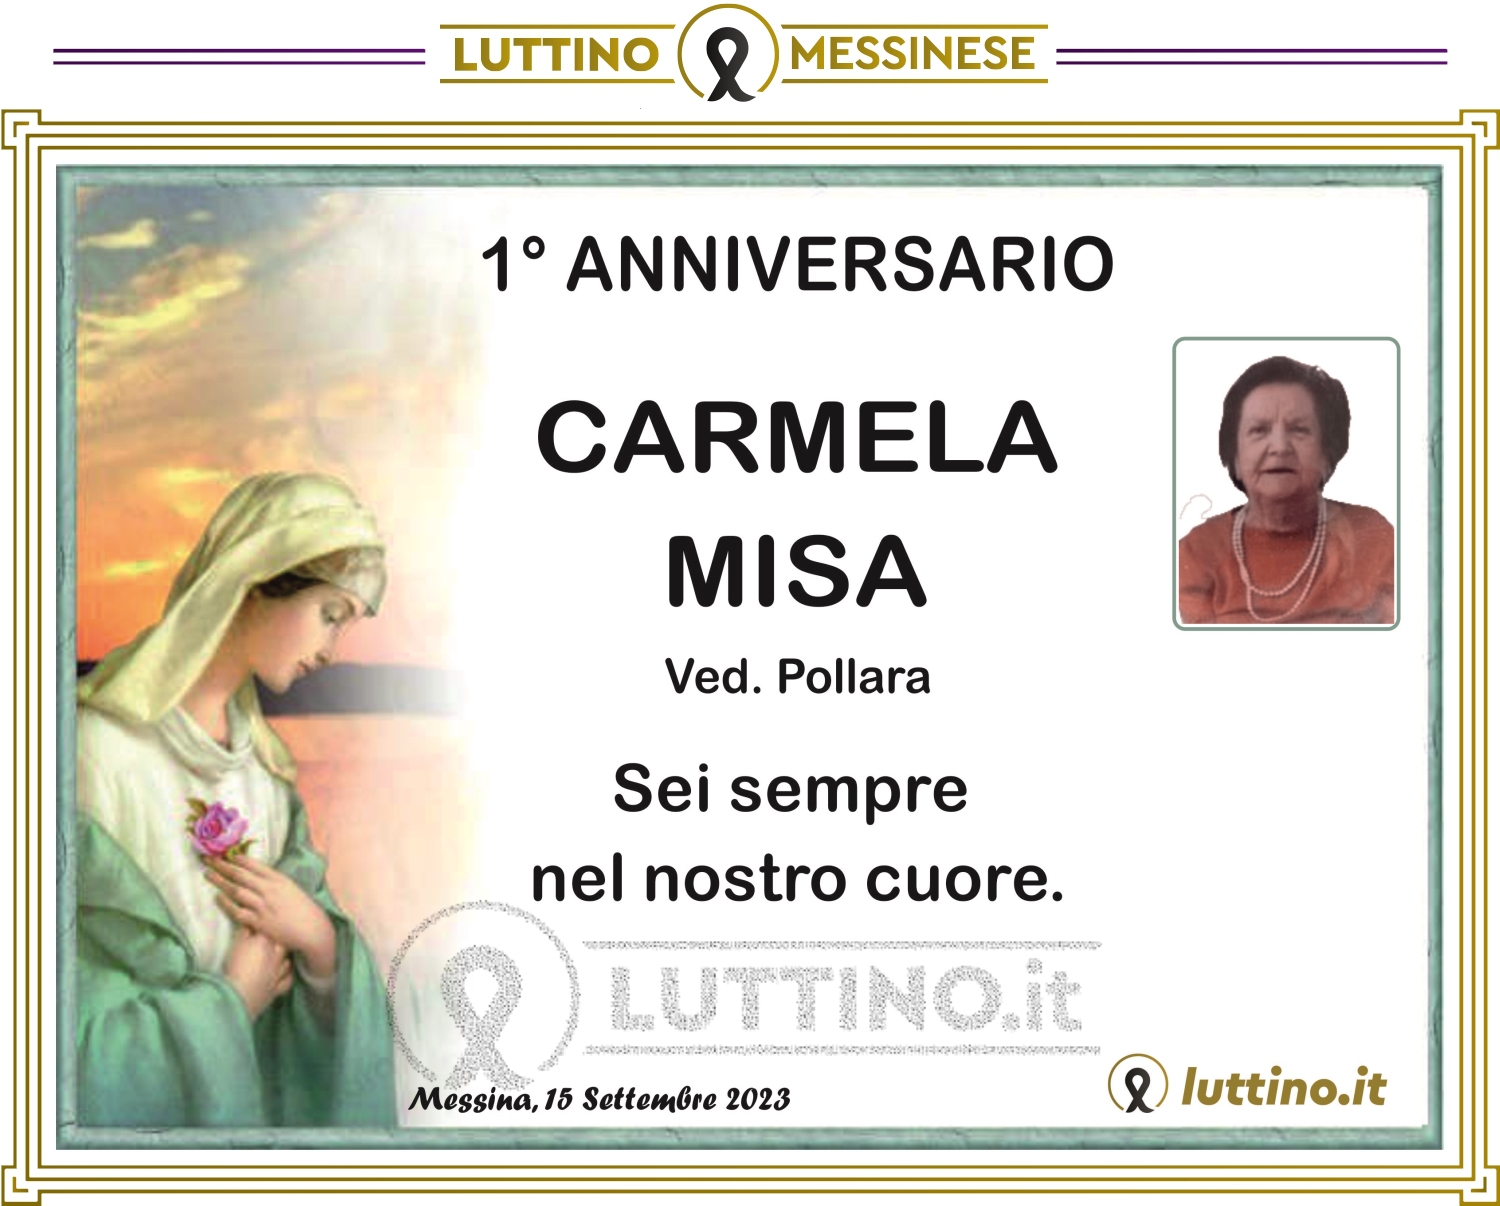 Carmela Misa